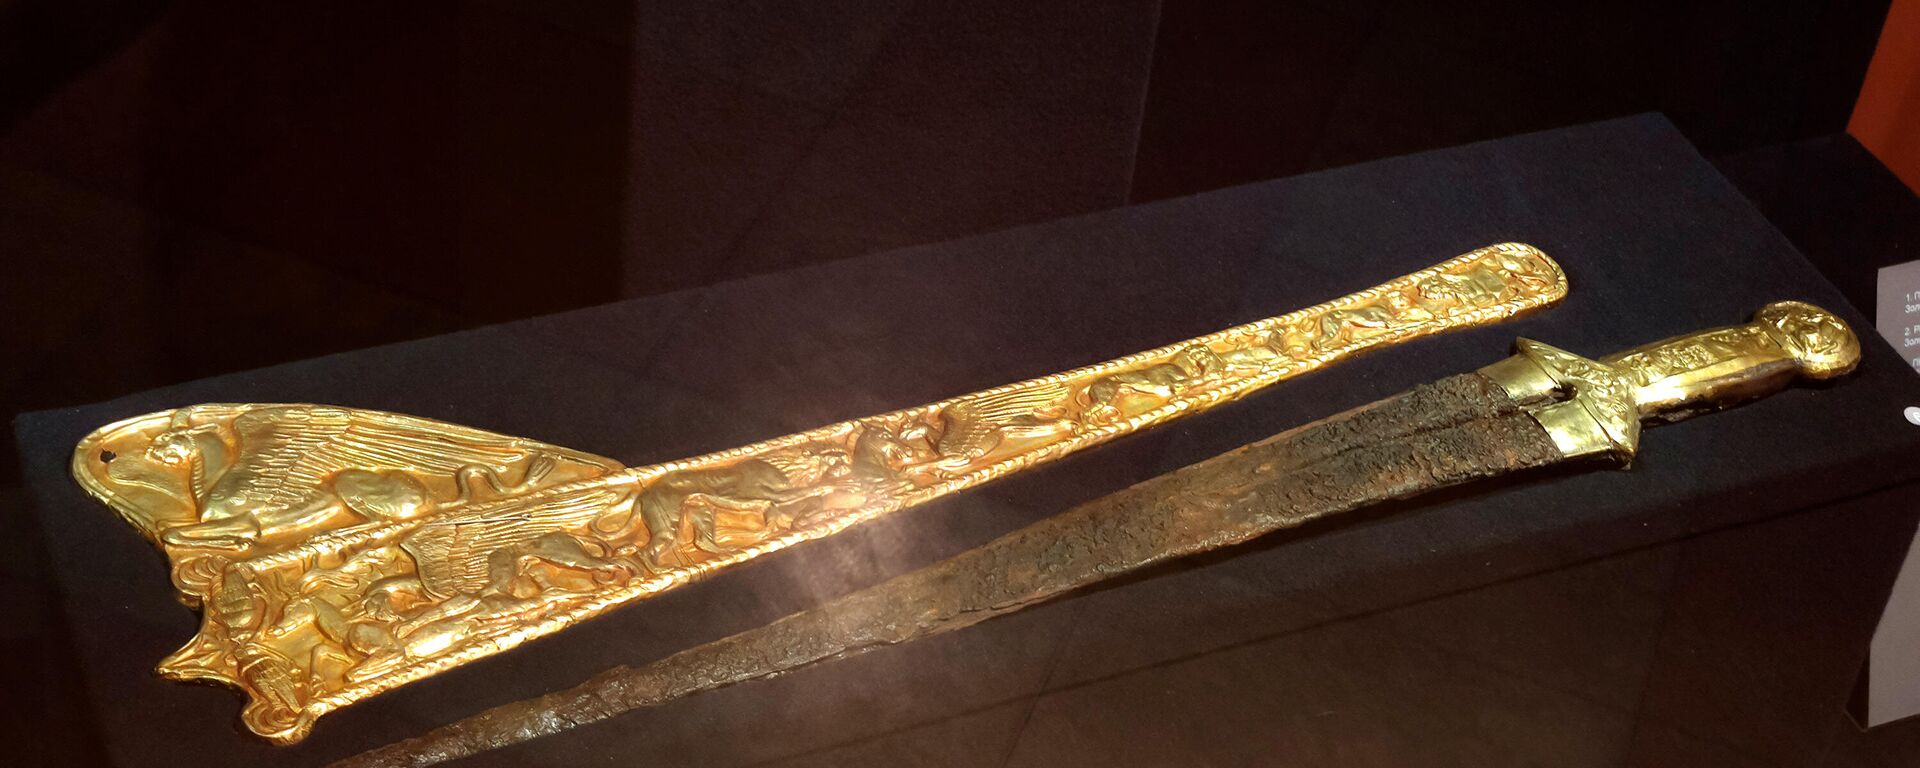 Скифский меч - экспонат выставки Скифское золото в Амстердаме, возвращенный на Украину - Sputnik Latvija, 1920, 28.10.2021